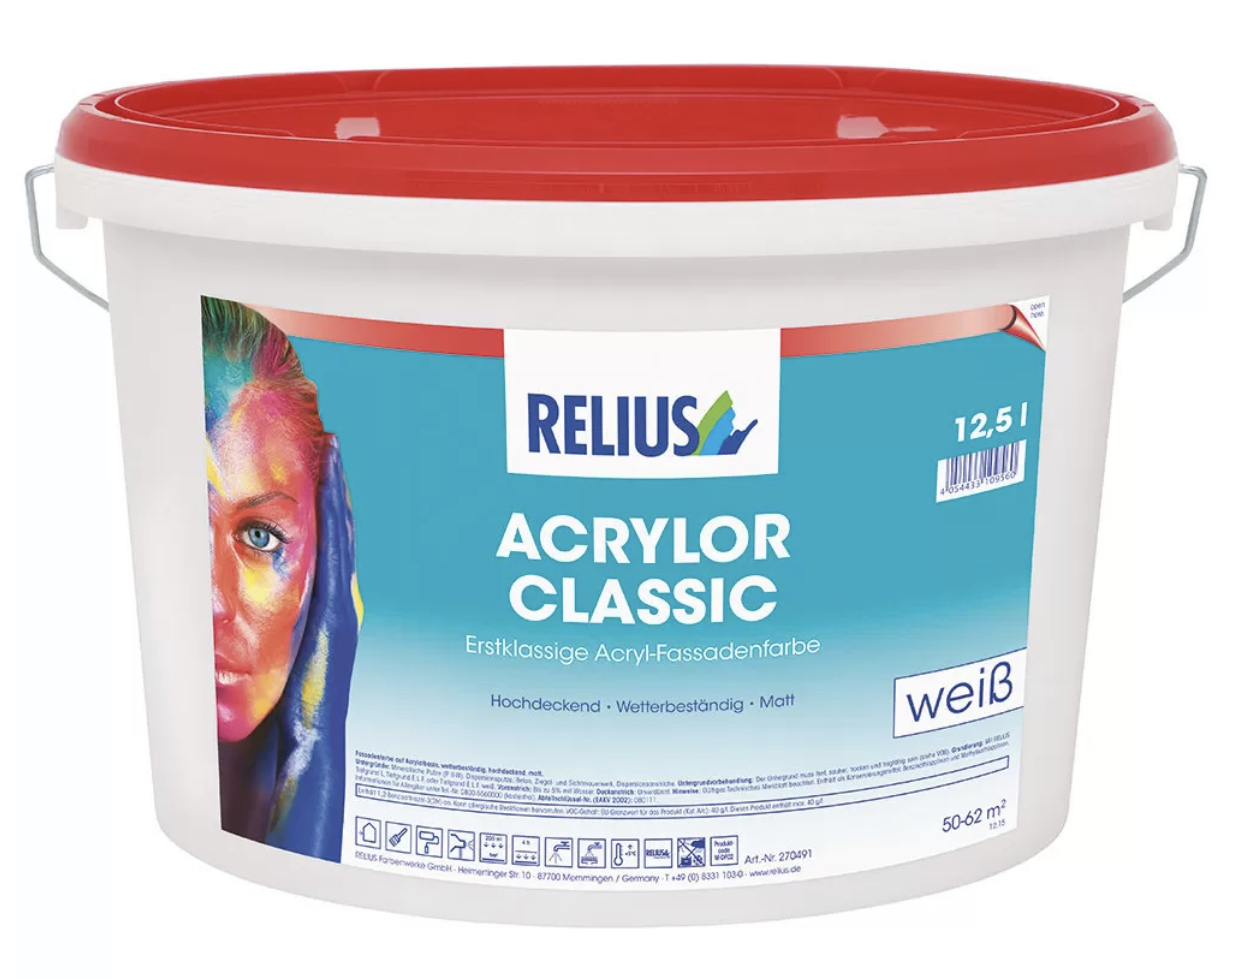 RELIUS Acrylor Classic zeer goed dekkende matte weerbestendige muurverf voor buiten per 12,5 liter wit of op kleur